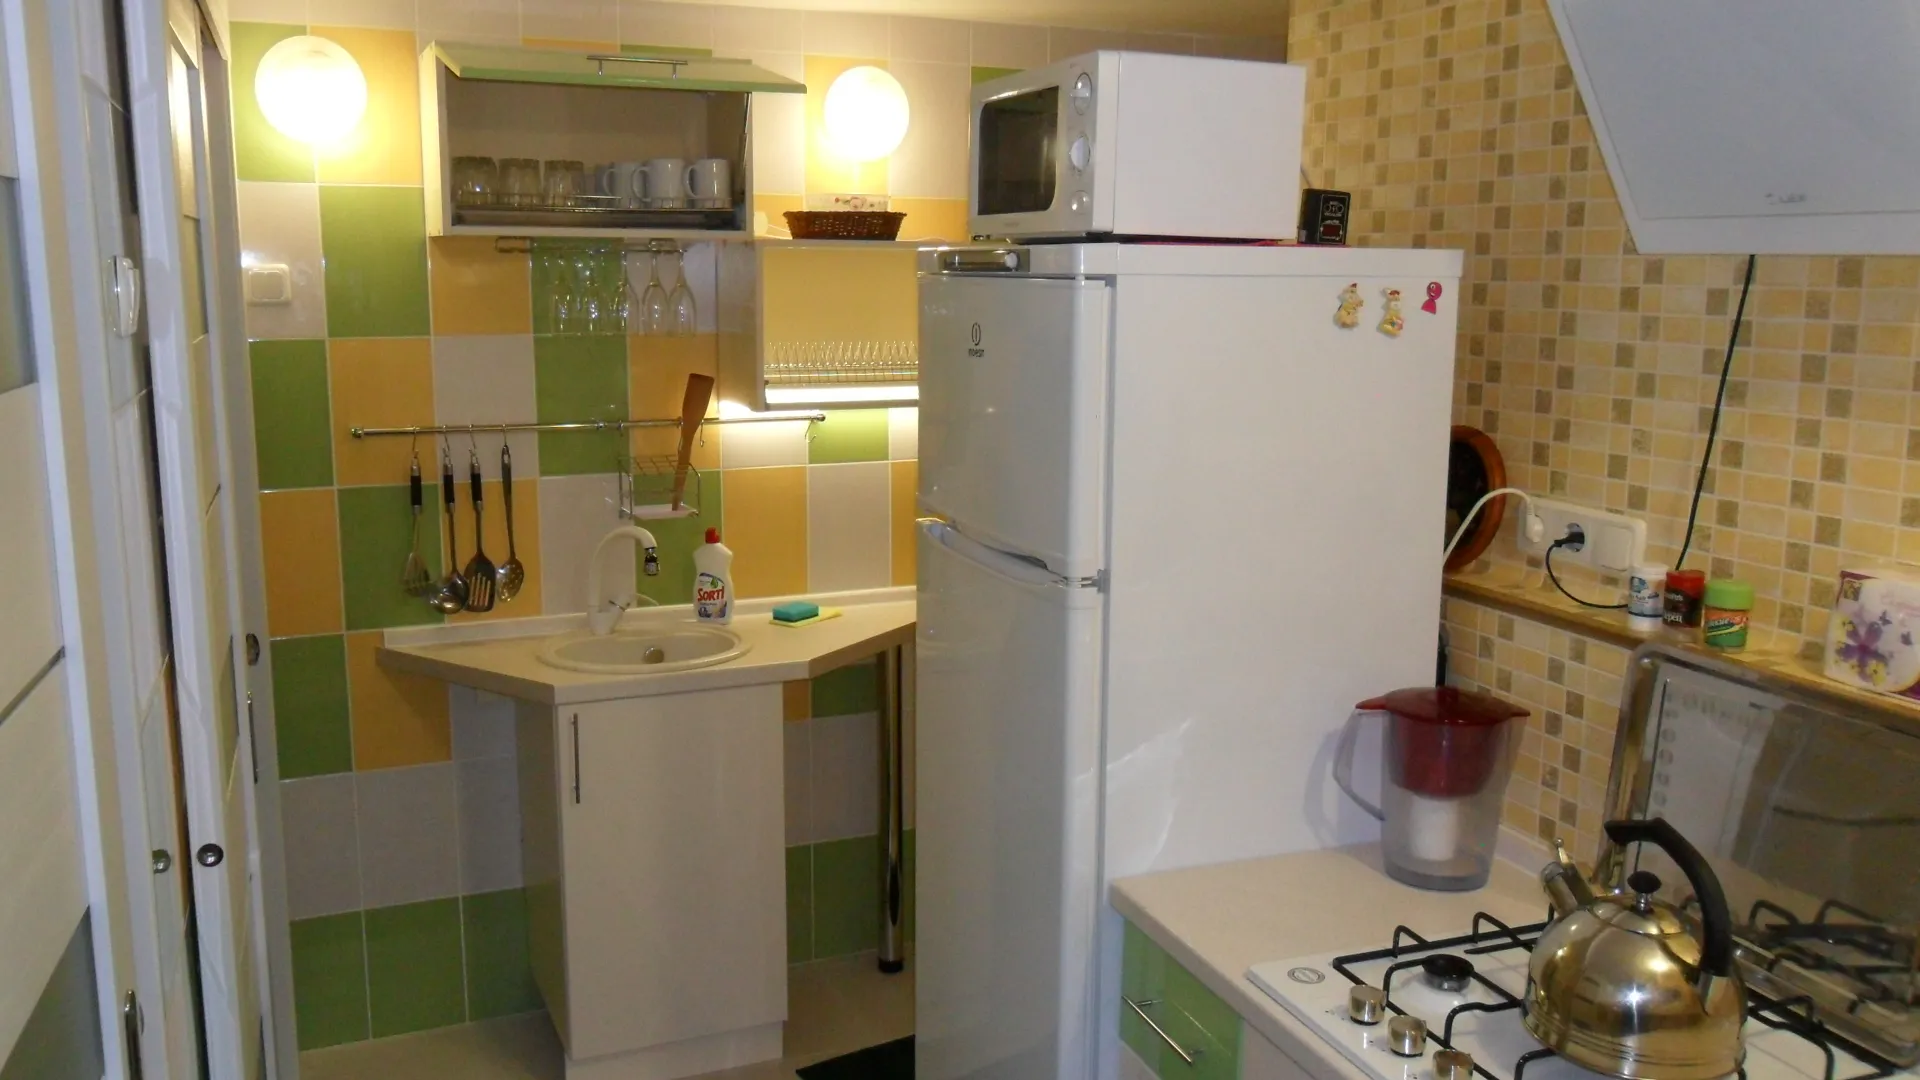 Кухня : газовая плита, холодильник, микроволновка, необходимая посуда и столовые приборы